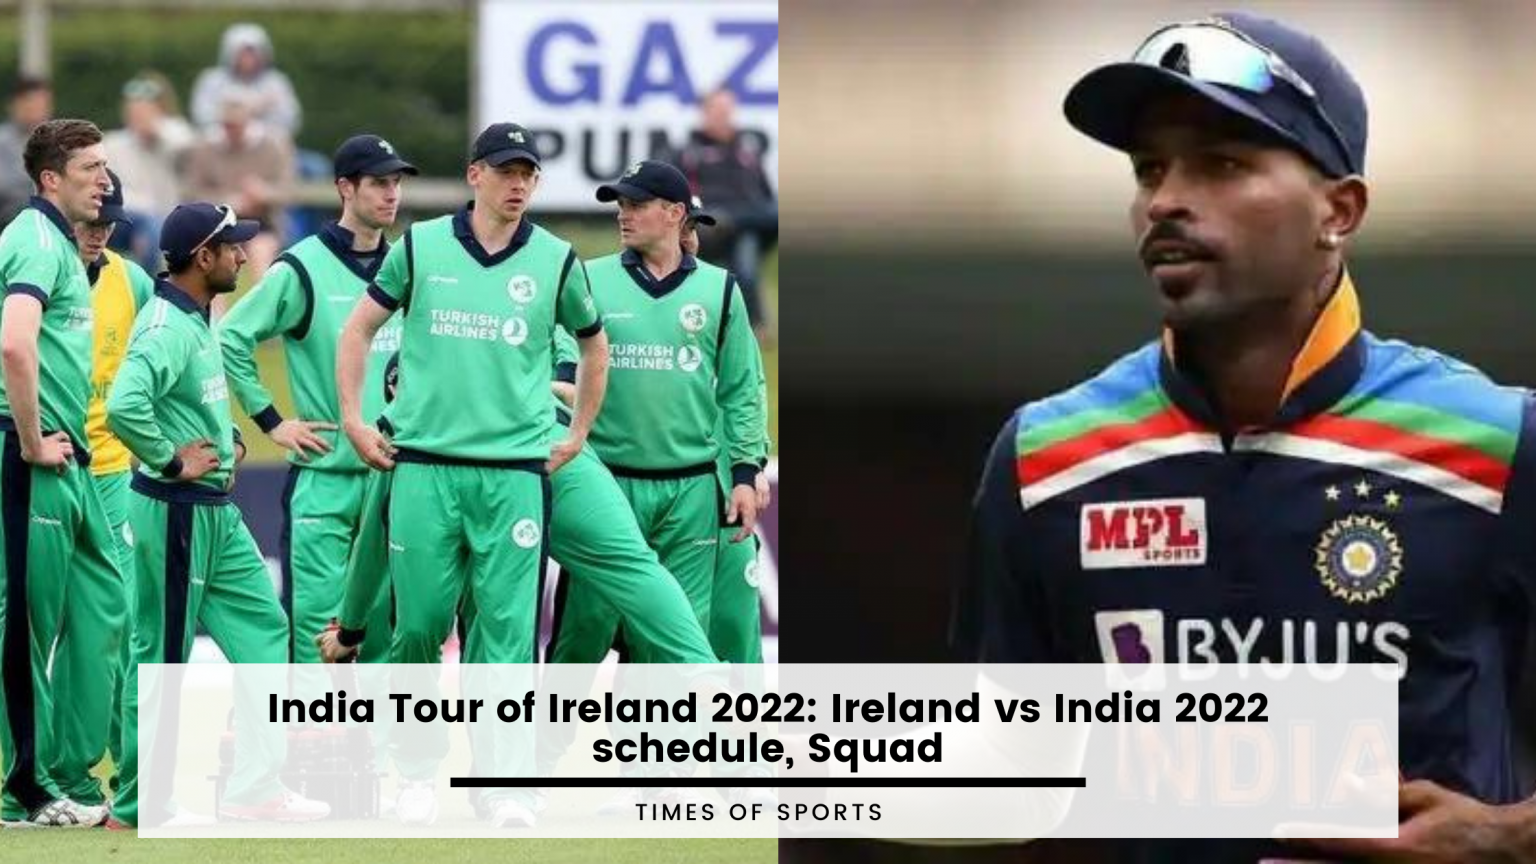 India Tour of Ireland 2022 Ireland vs India 2022 schedule, Squad, and